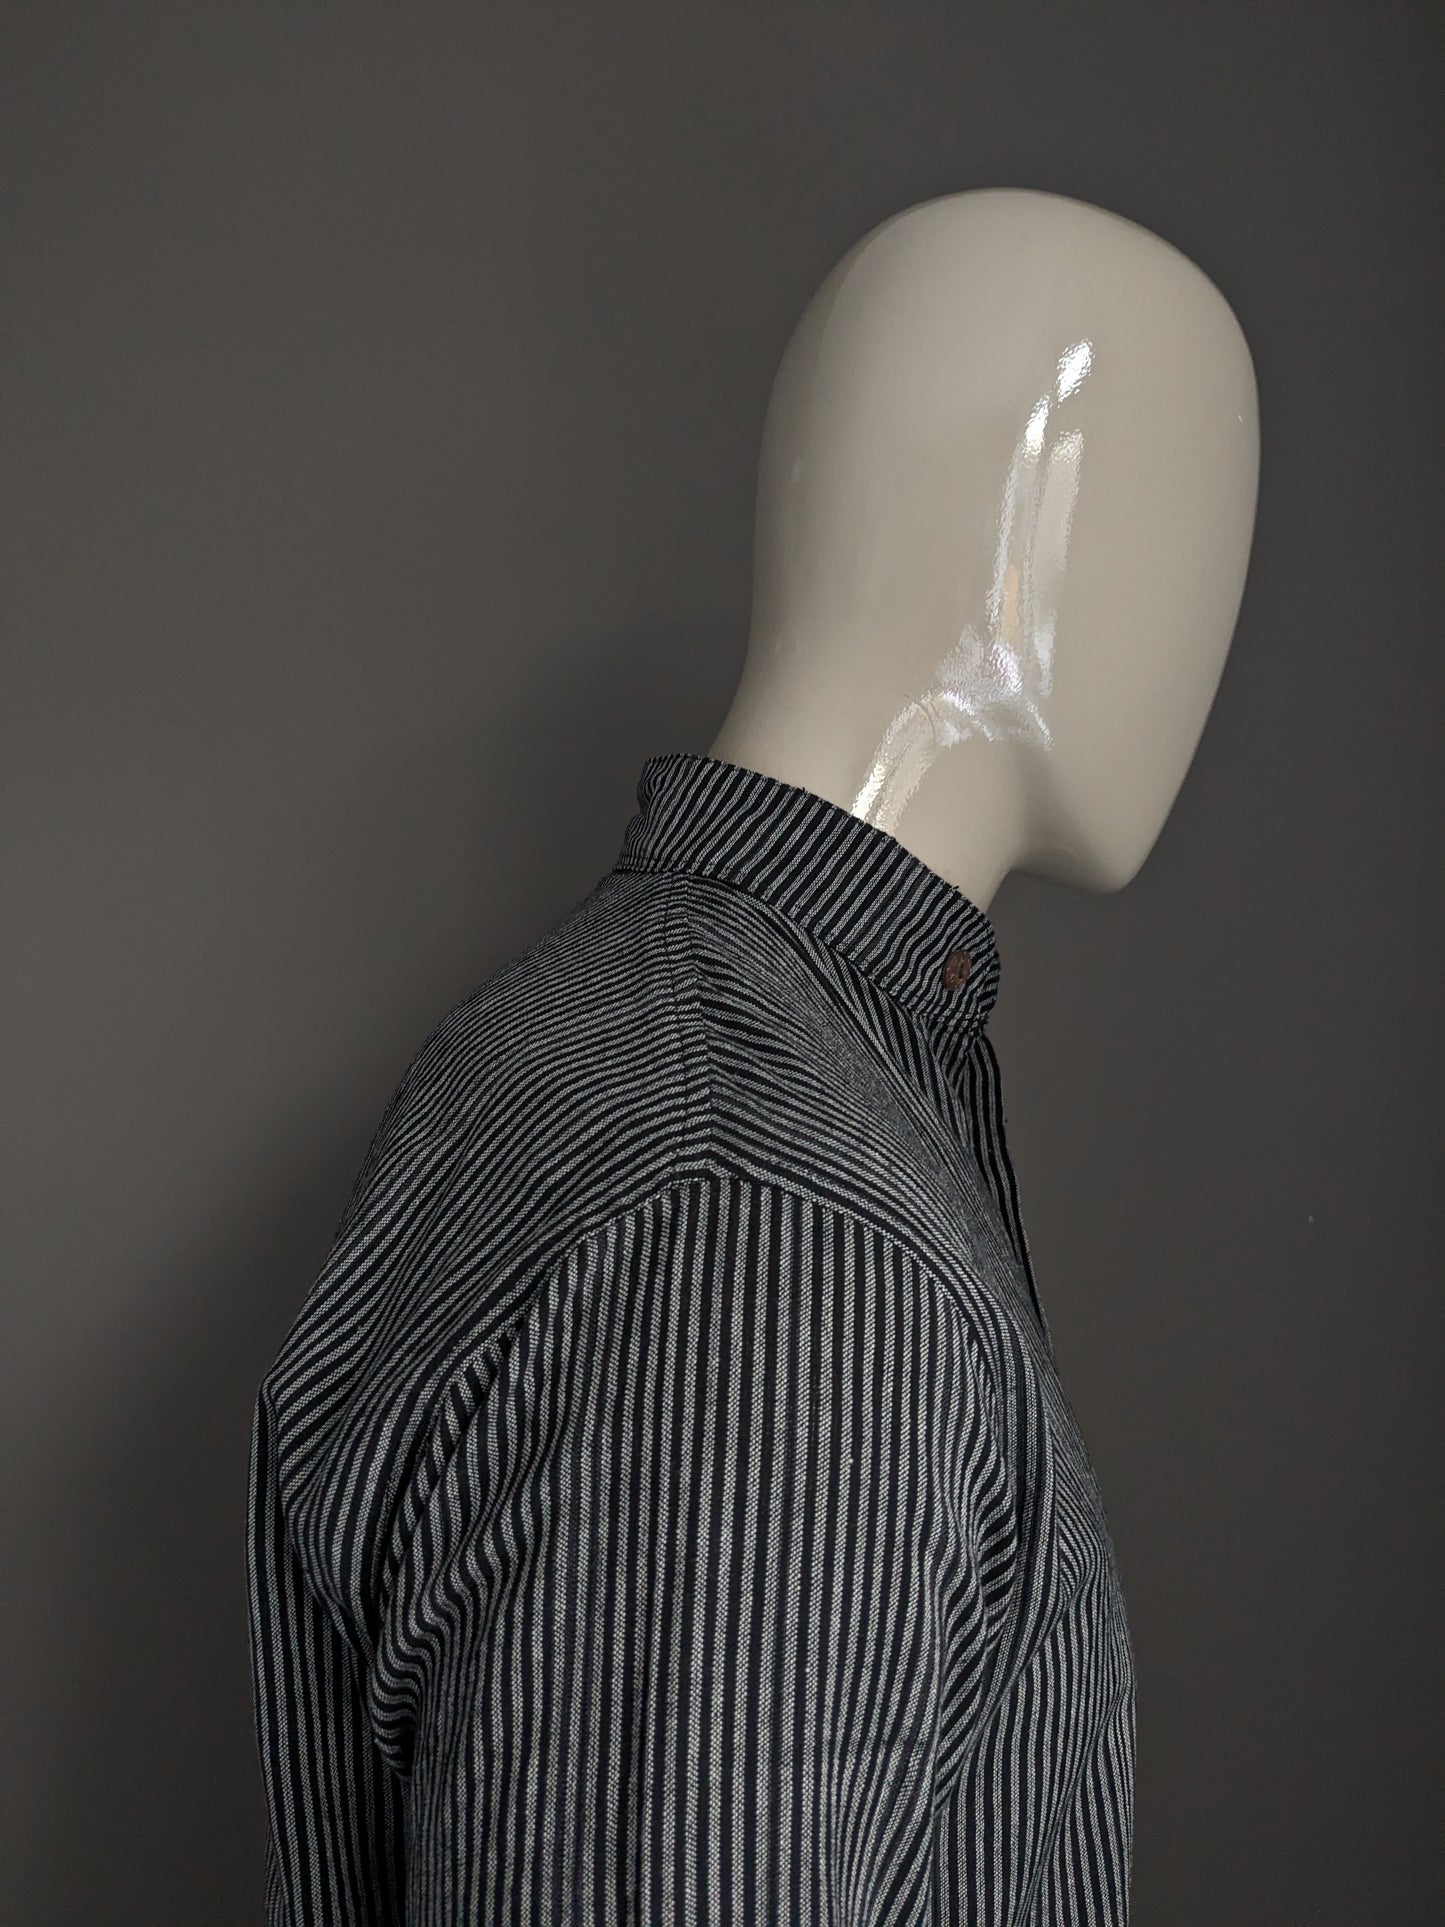 Vintage -Hemd aufrecht / Bauern / Mao -Kragen. Schwarz grau gestreift. Größe M.